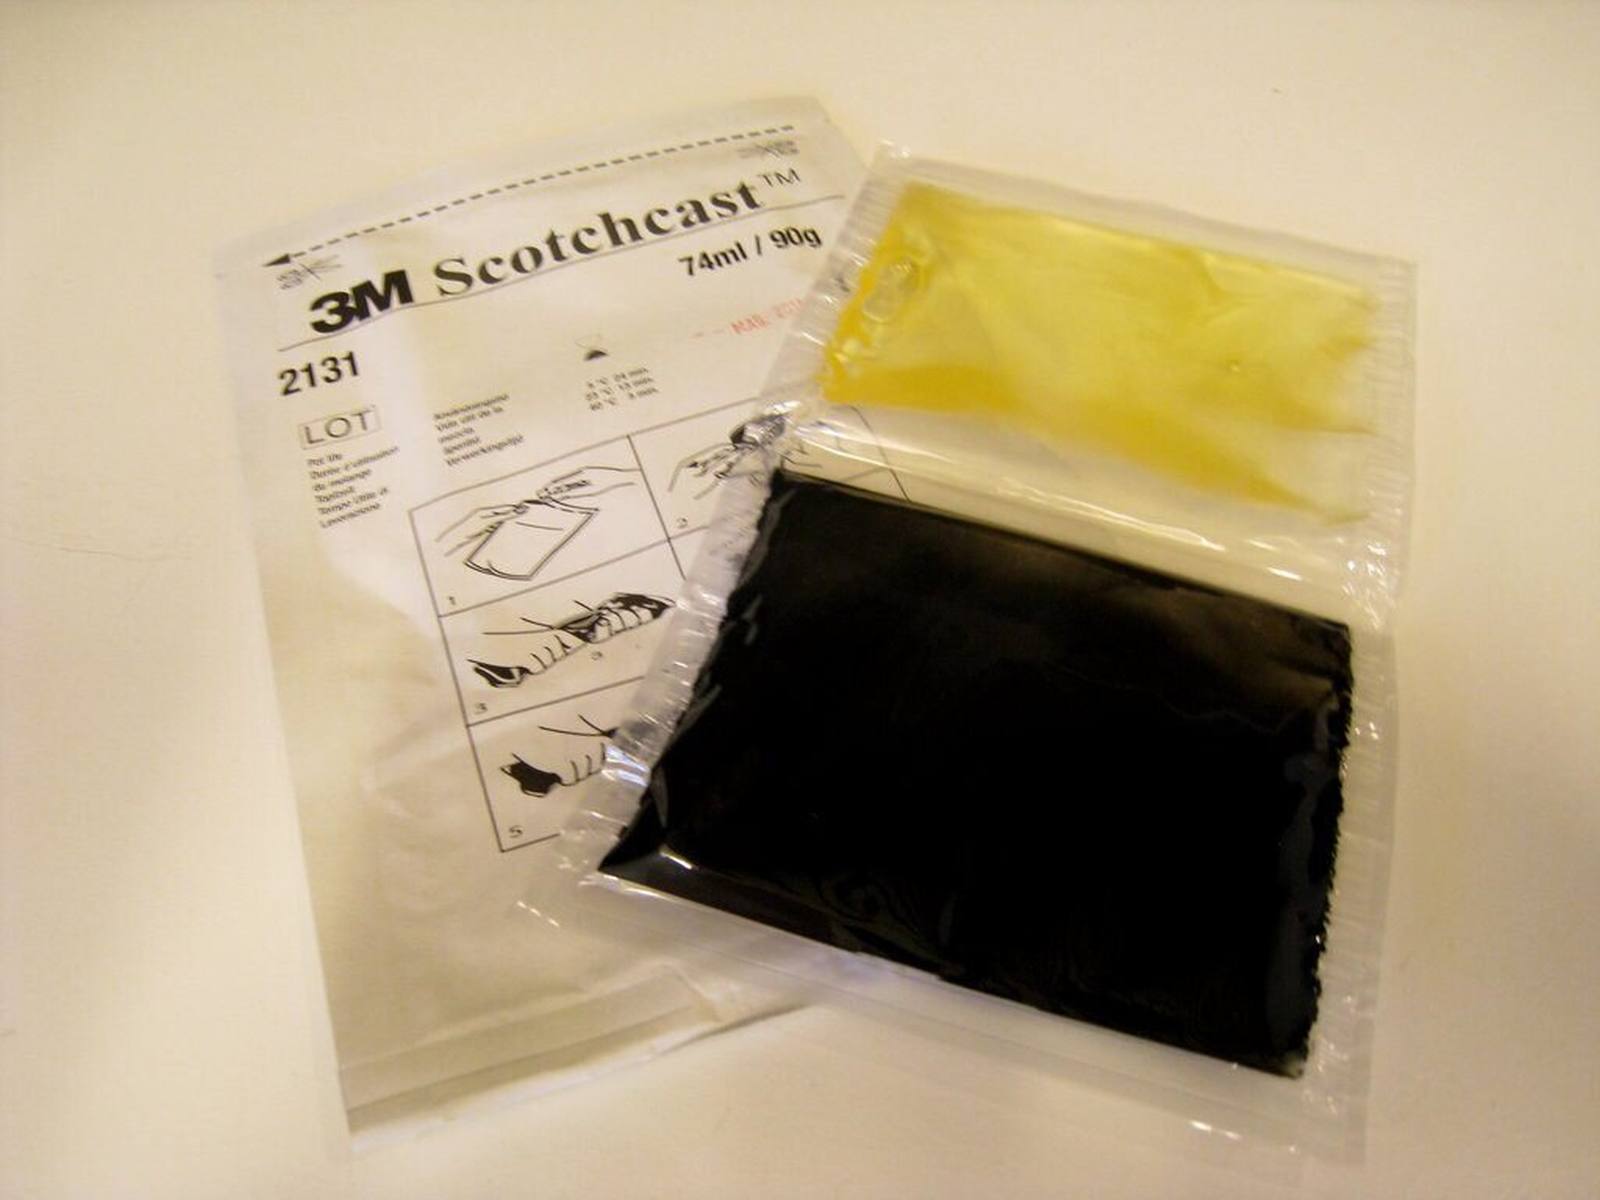 3M Scotchcast 2131-B, polyuretaanikaapelihartsi, 2-komponenttinen GMG-järjestelmä, koko B, 173 ml.